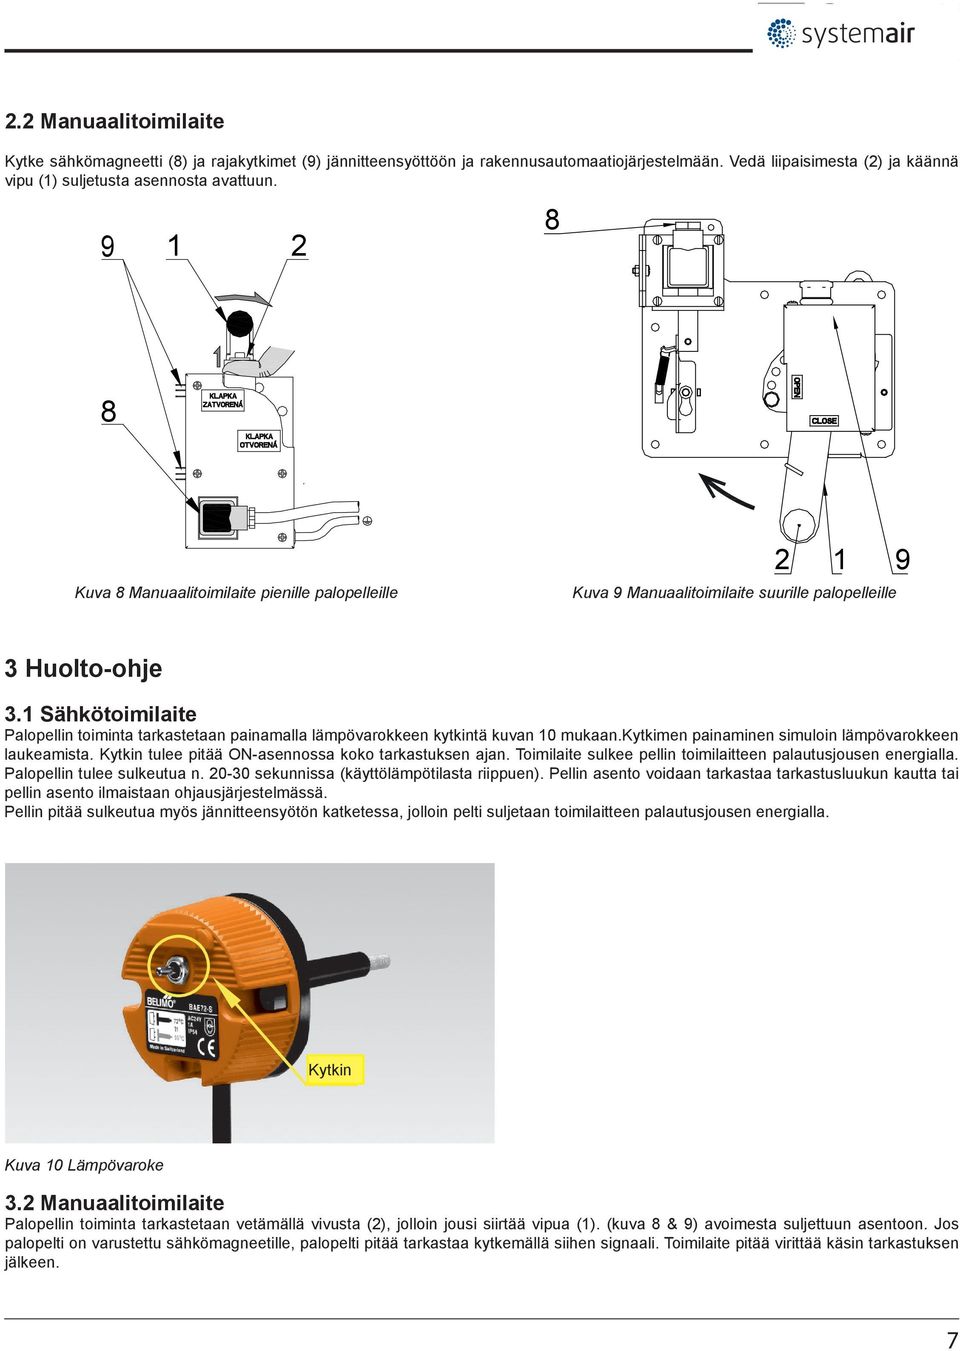 1 Sähkötoimilaite Palopellin toiminta tarkastetaan painamalla lämpövarokkeen kytkintä kuvan 10 mukaan.kytkimen painaminen simuloin lämpövarokkeen laukeamista.